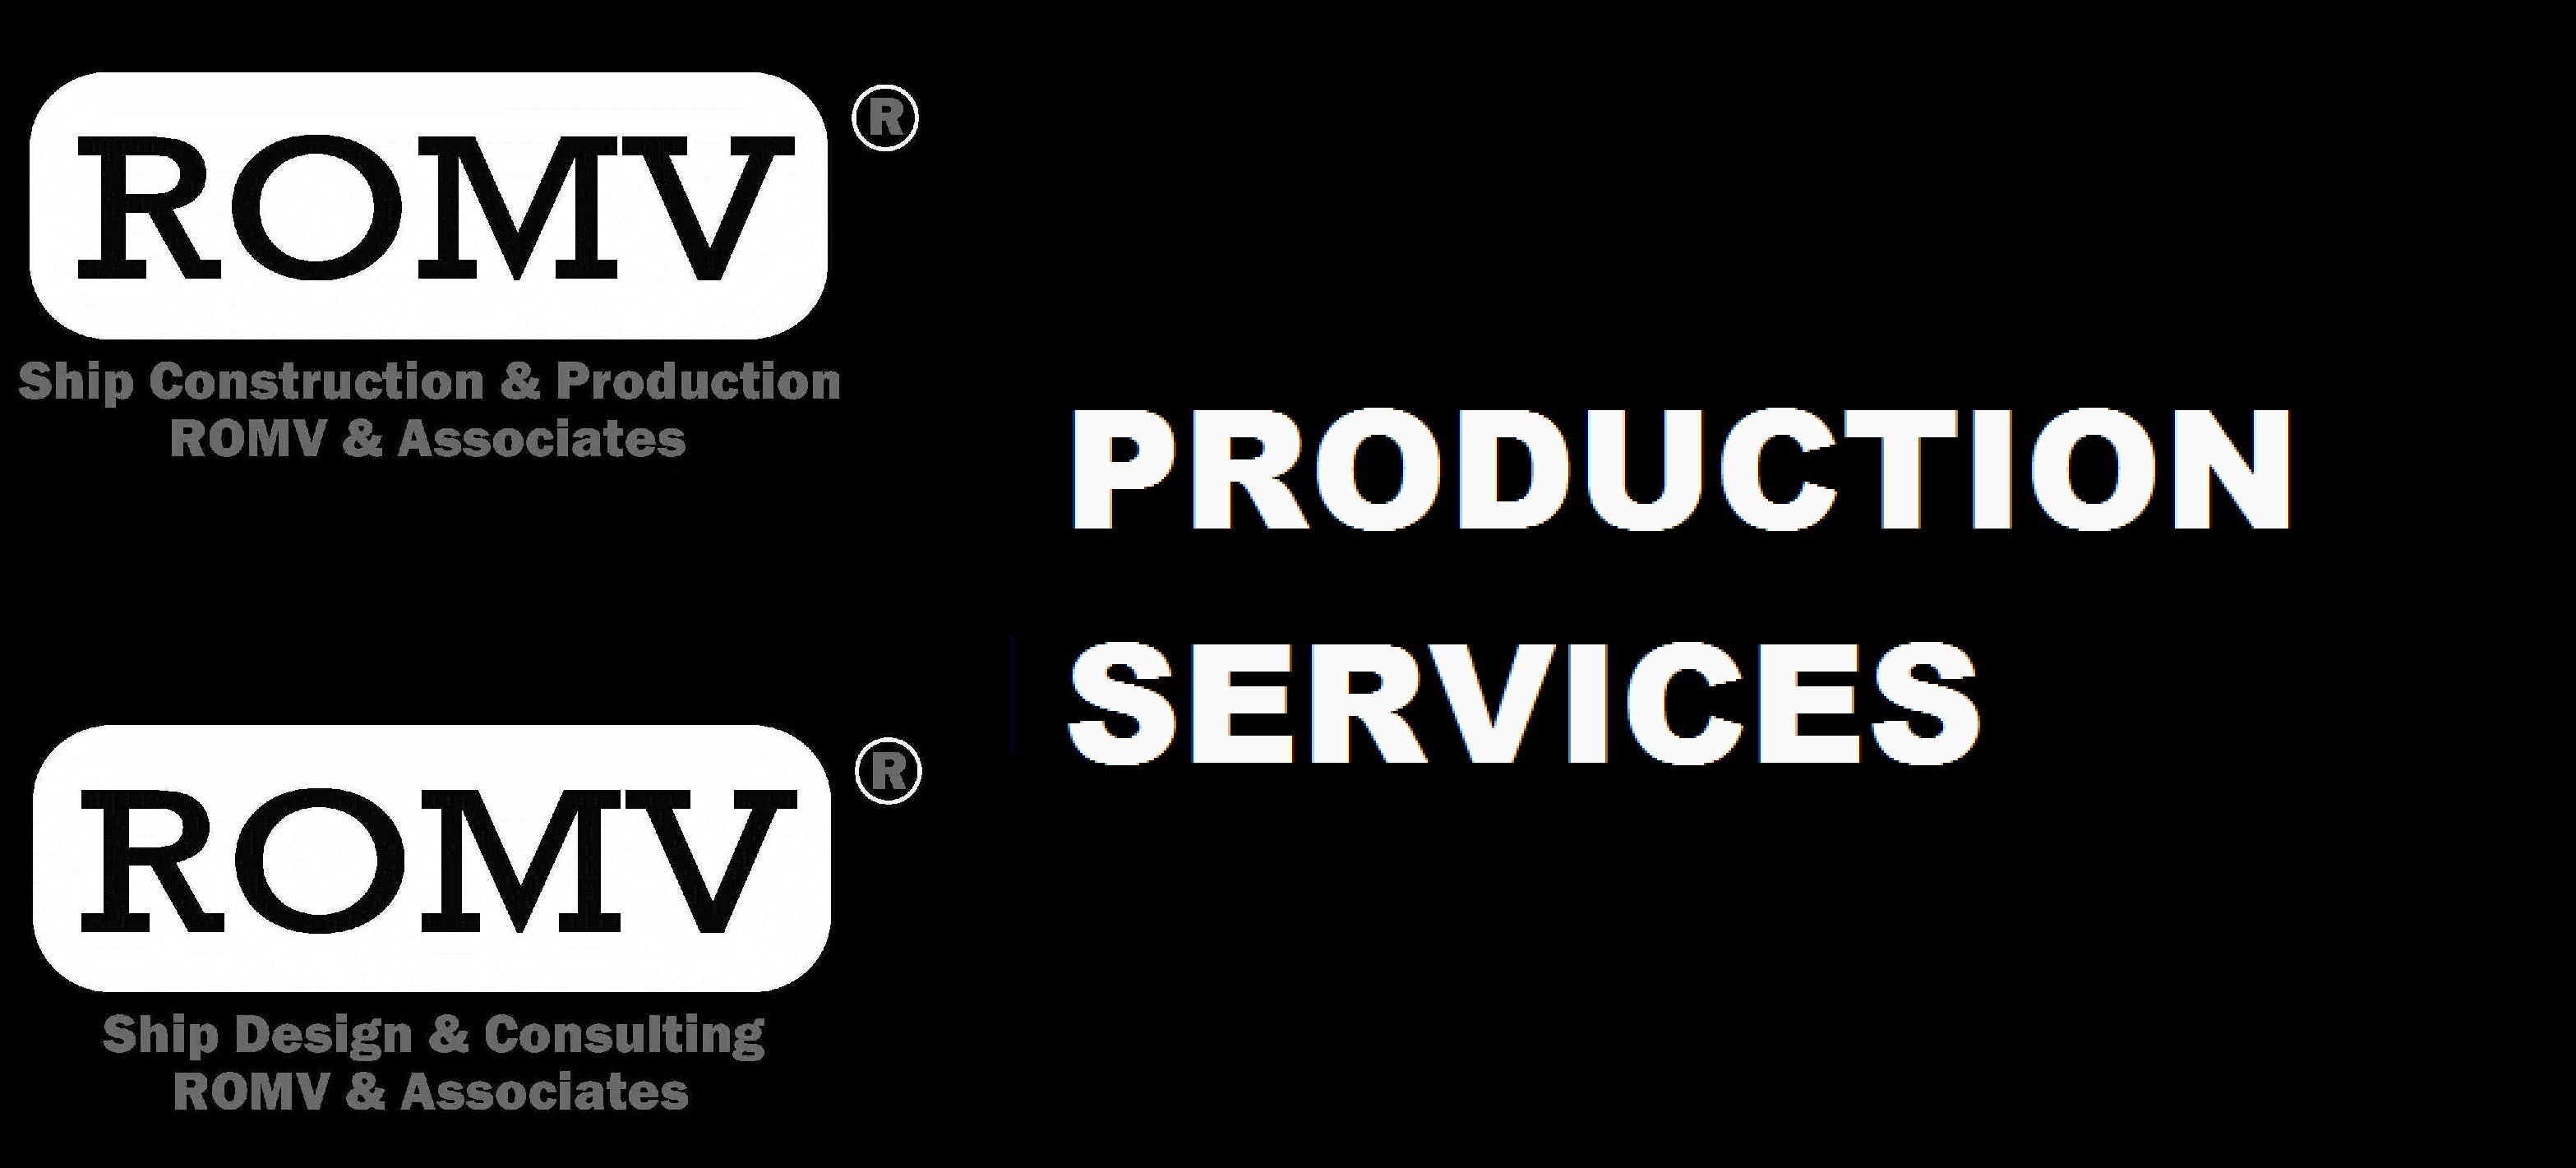 ROMV Production Services